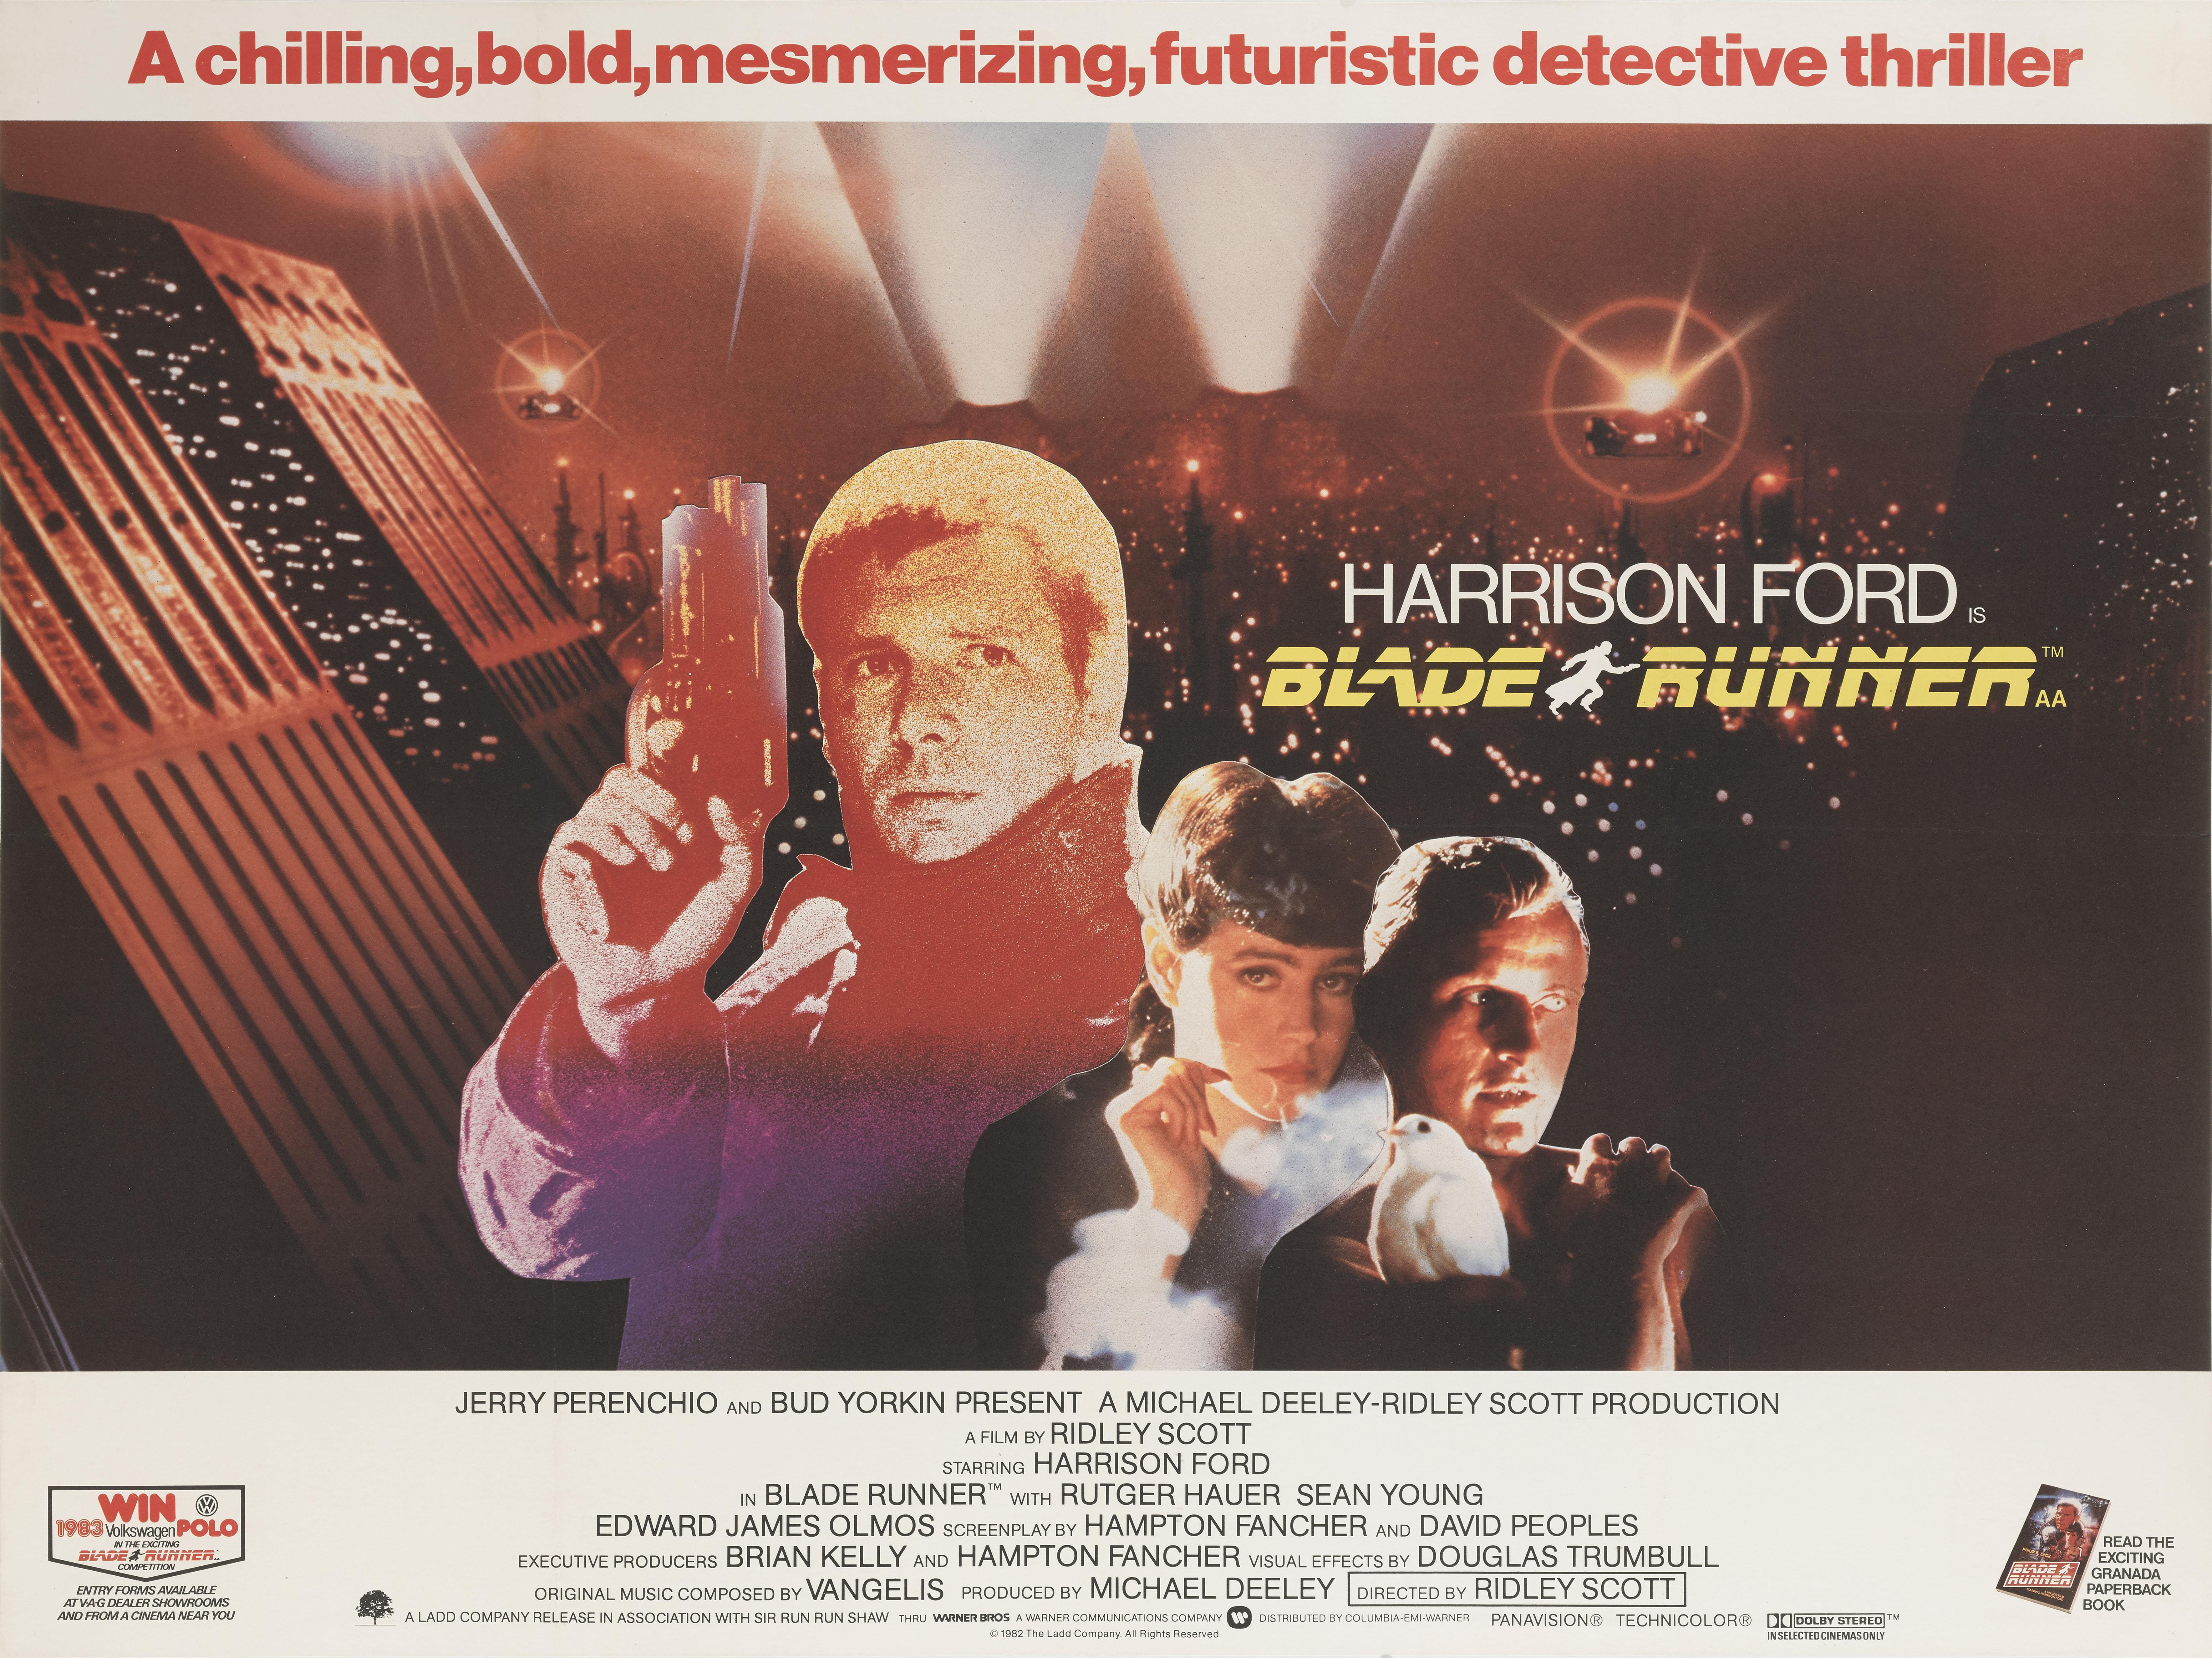 Affiche originale britannique pour le film culte de science-fiction de 1982
avec Harrison Ford, Rutger Hauer et Sean Young. Le film a été réalisé par Ridley Scott.
Cette affiche est doublée de toile de conservation et sera expédiée roulée dans un